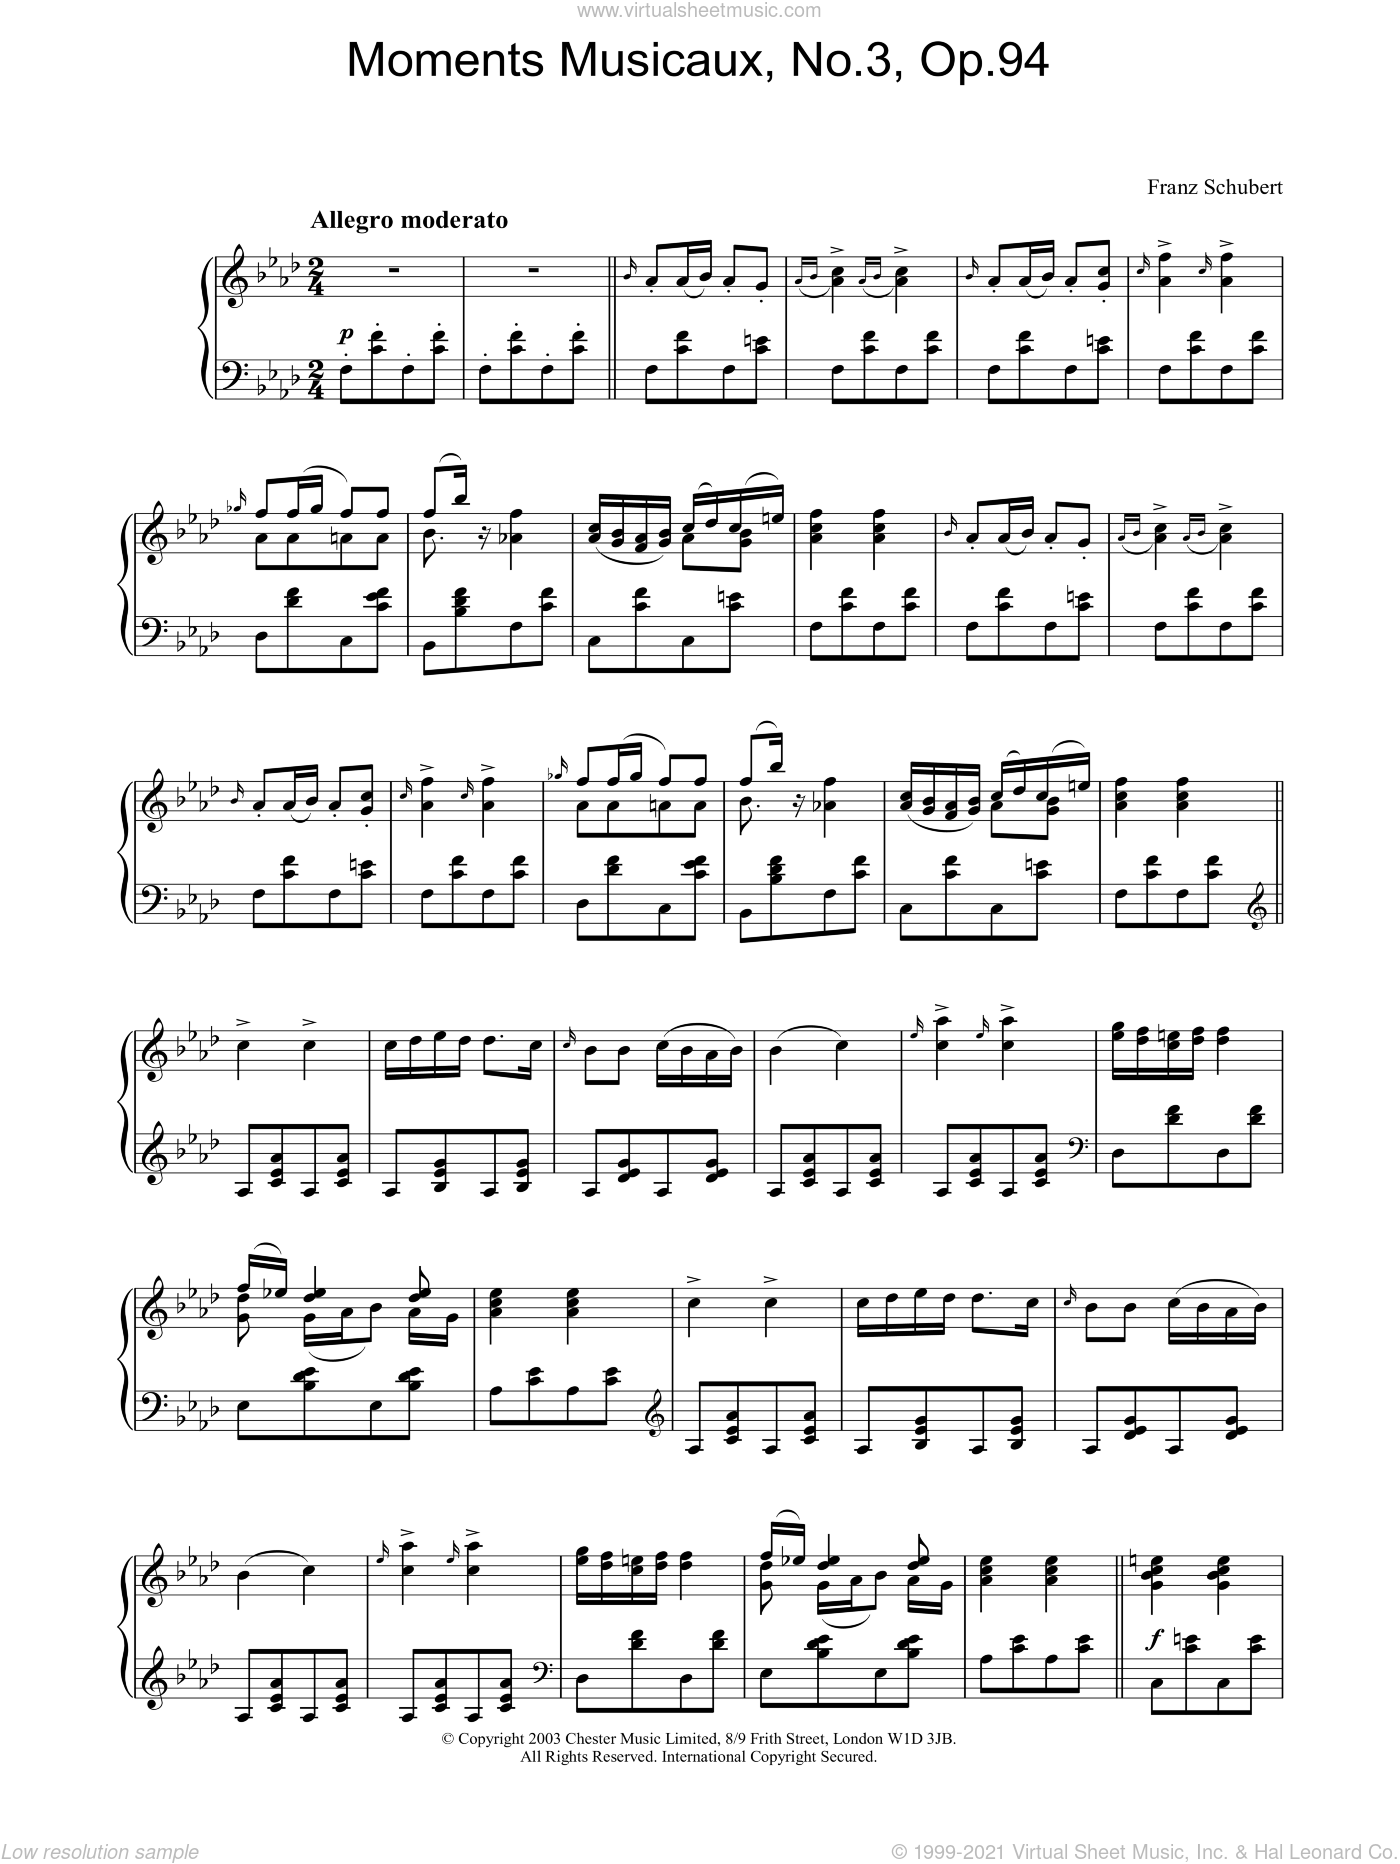 Moments Musicaux 94 Op Schubert